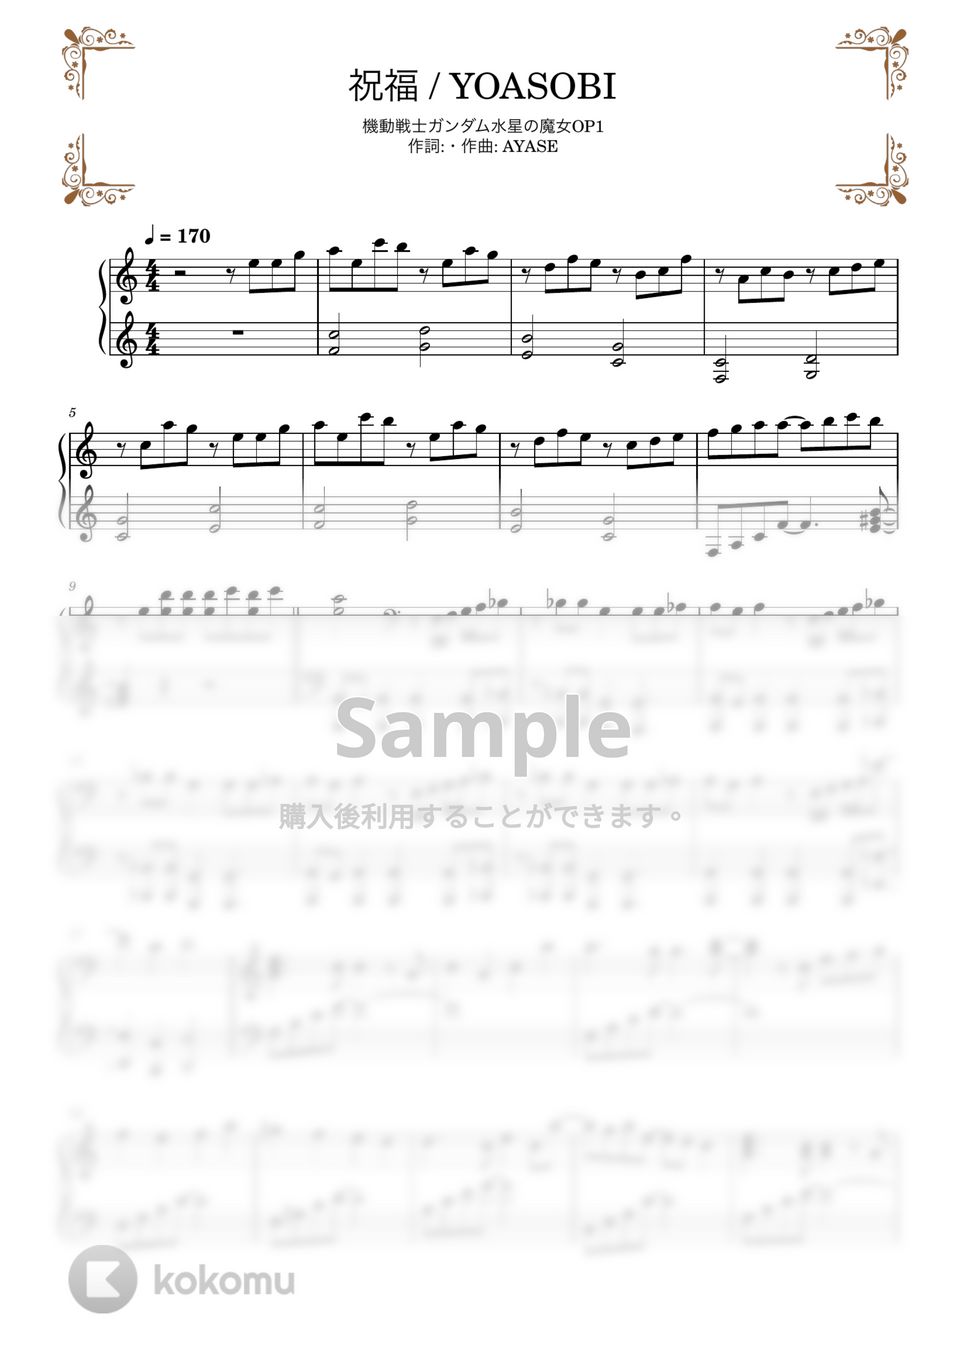 YOASOBI - 祝福 (ピアノソロ) by TAKÈCHAN